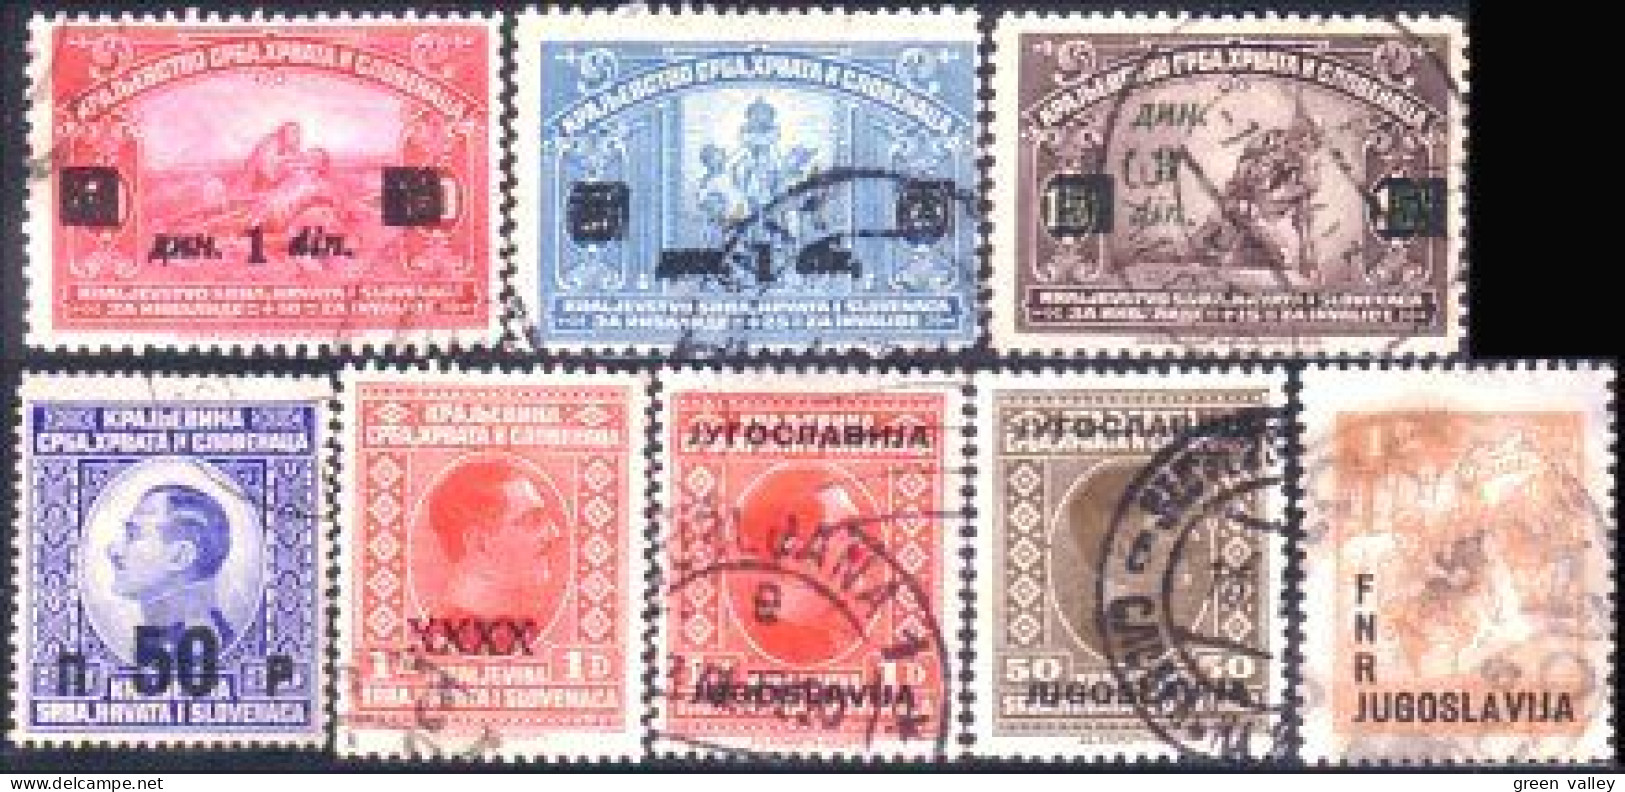 954 Yougoslavie Overprint Surcharge (YUG-212) - Used Stamps